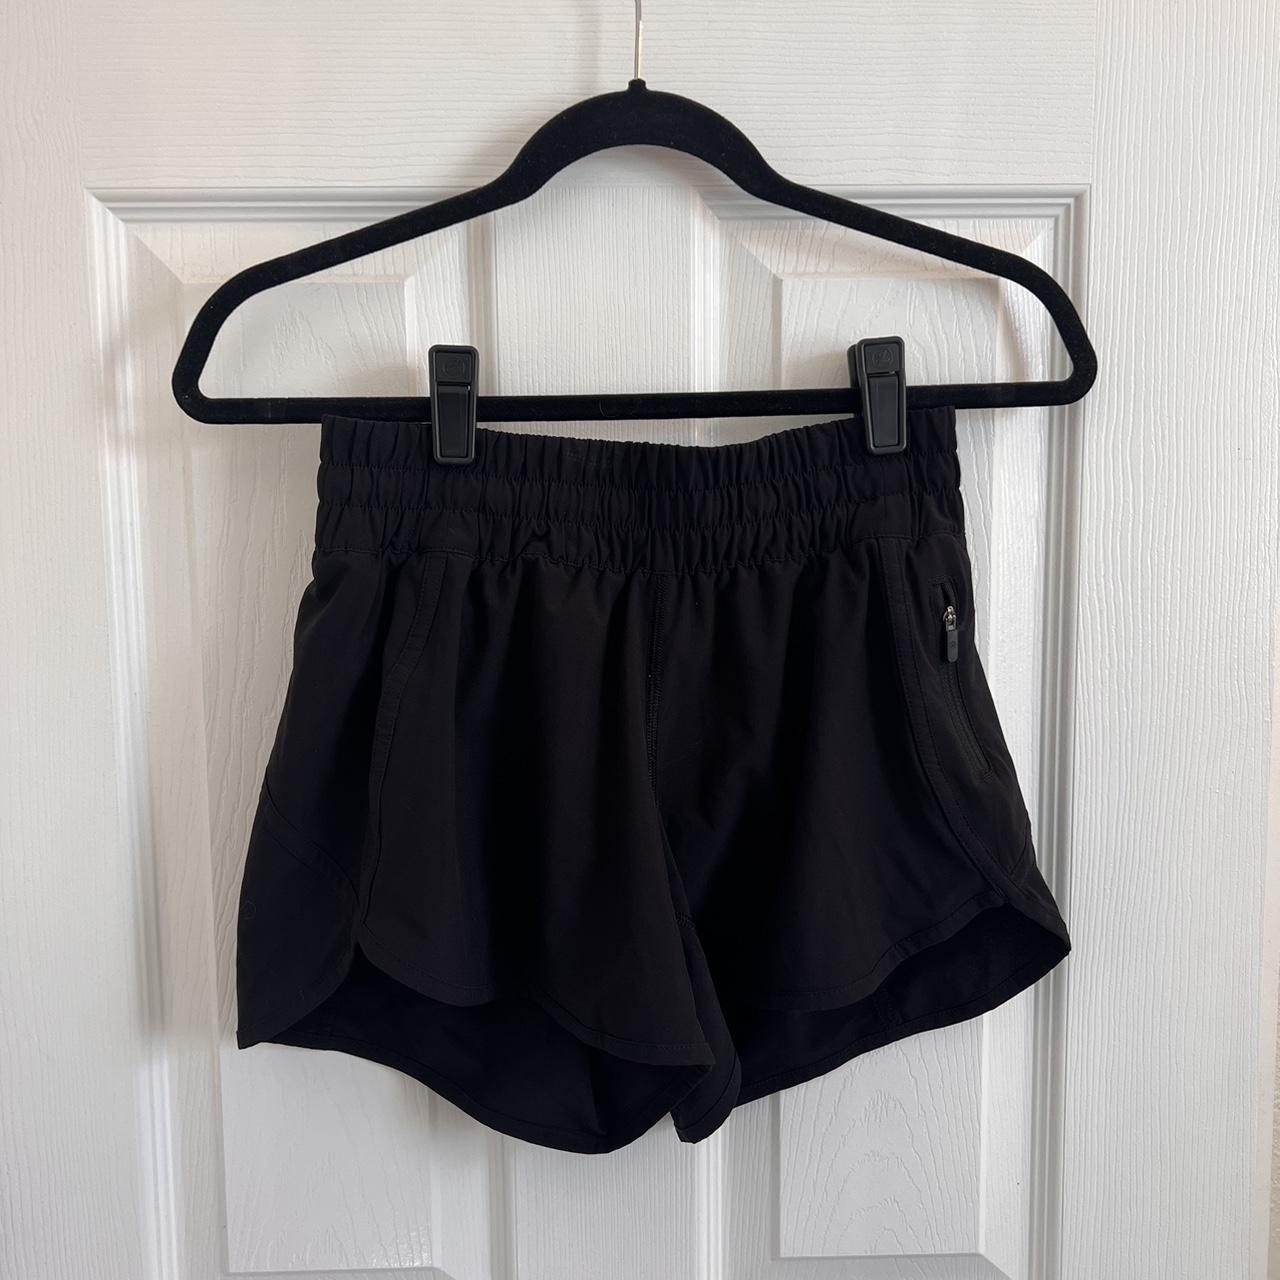 Lululemon black shorts. Size 4 #lululemon - Depop